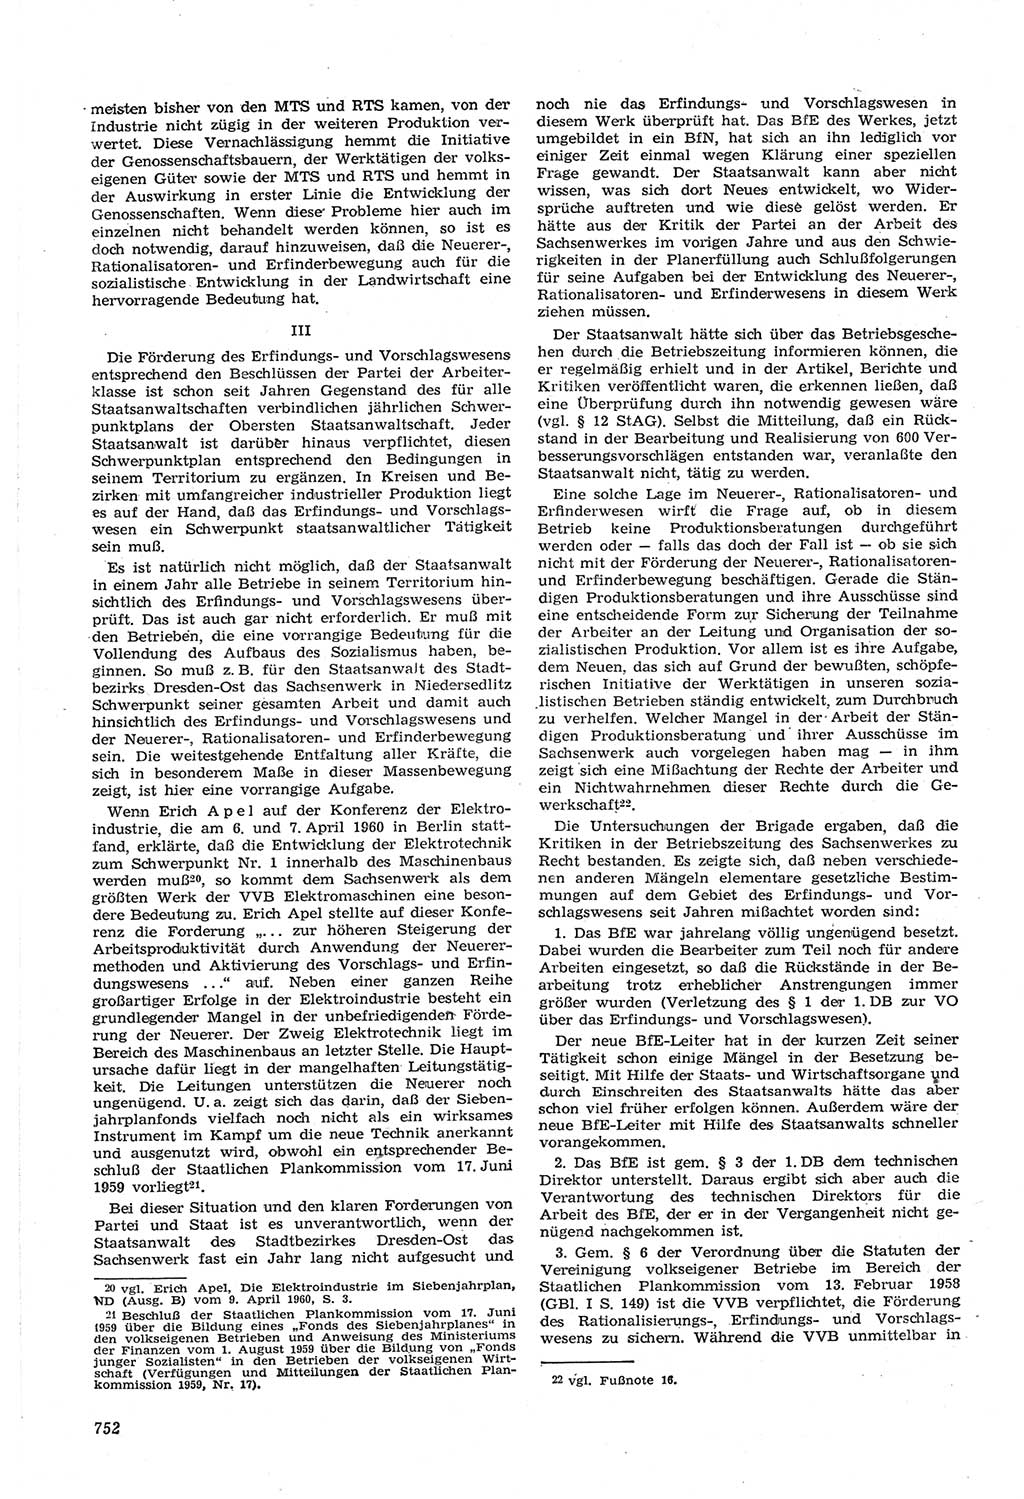 Neue Justiz (NJ), Zeitschrift für Recht und Rechtswissenschaft [Deutsche Demokratische Republik (DDR)], 14. Jahrgang 1960, Seite 752 (NJ DDR 1960, S. 752)